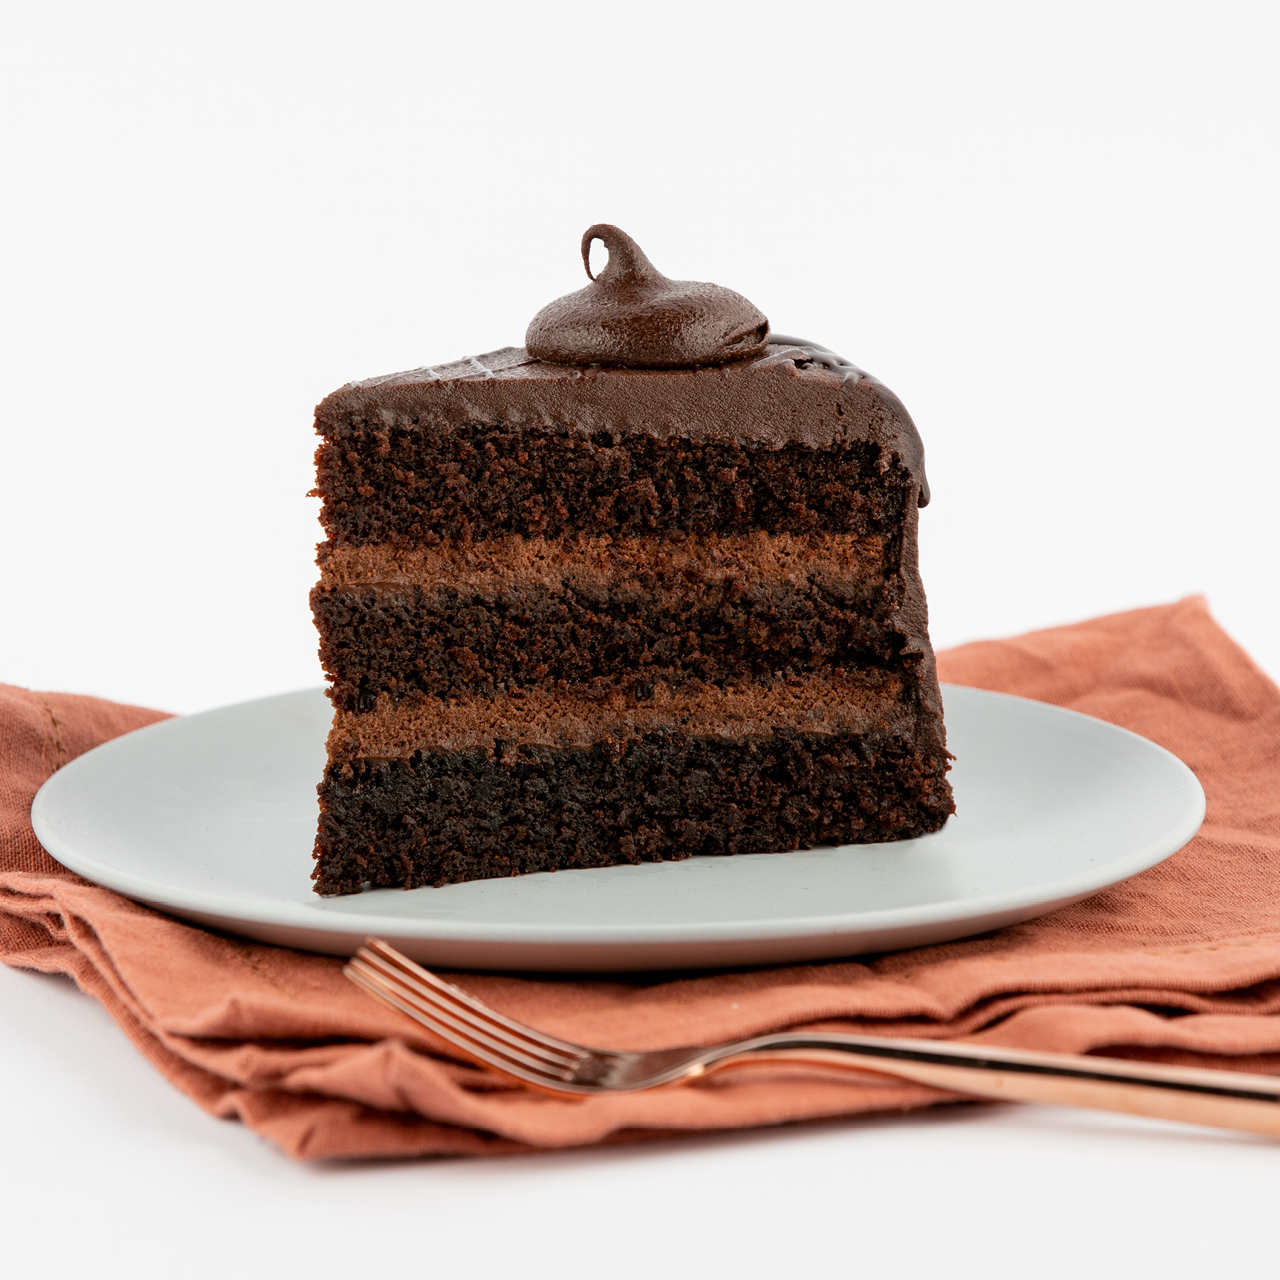 Heritage Chocolate Cake Recipe | Hersheyland